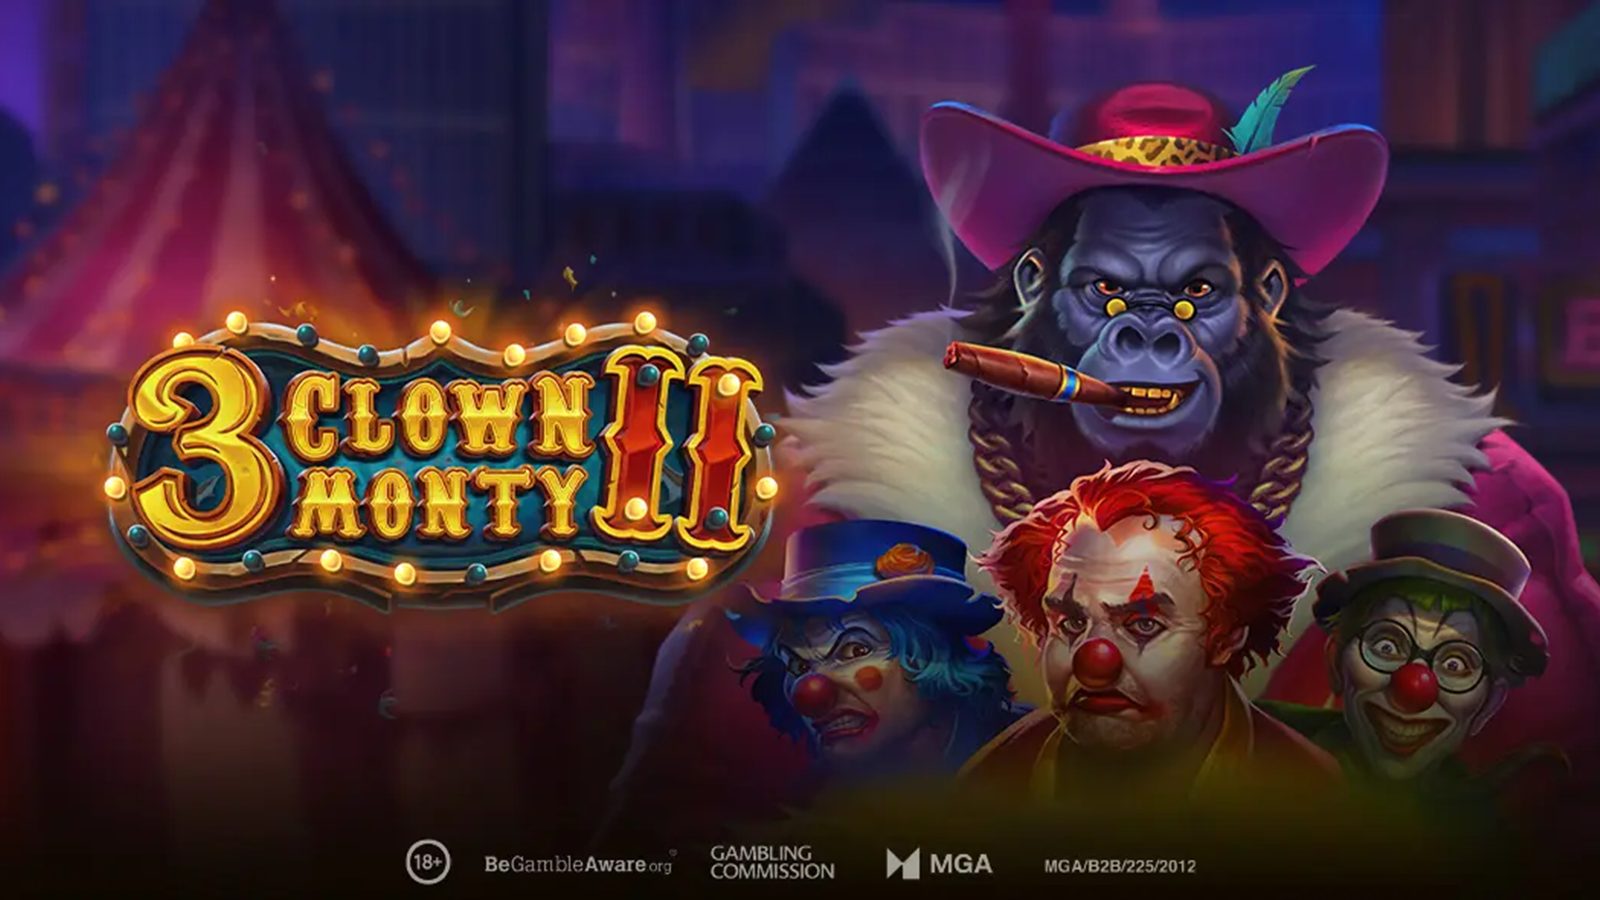 3 Clown Monty II Slot by Play’n GO